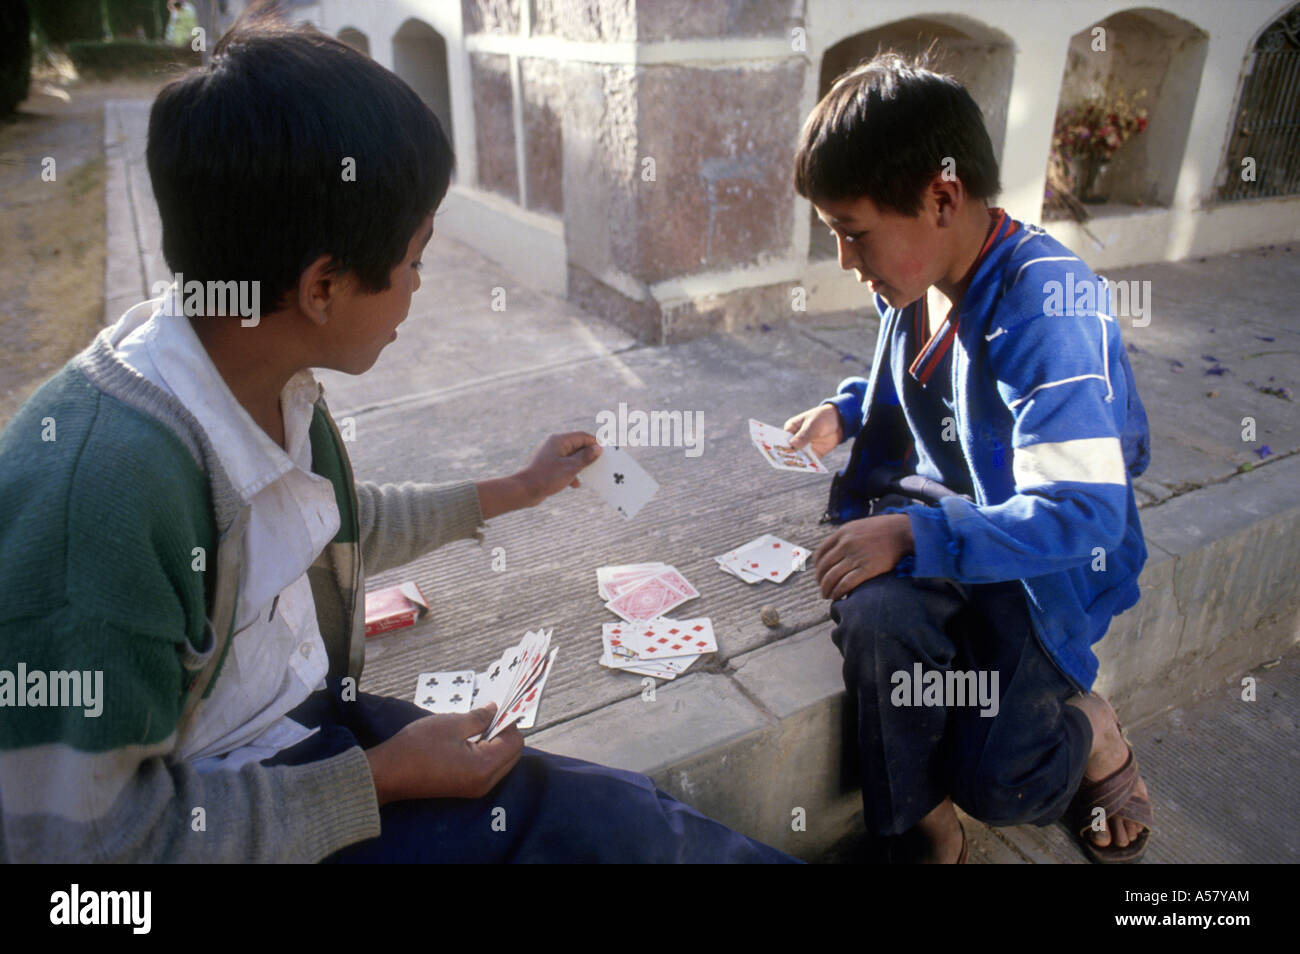 Painet ha2062 4154 ragazzi giocare a carte cimitero sucre Bolivia paese nazione in via di sviluppo meno sviluppati dal punto di vista economico la cultura Foto Stock